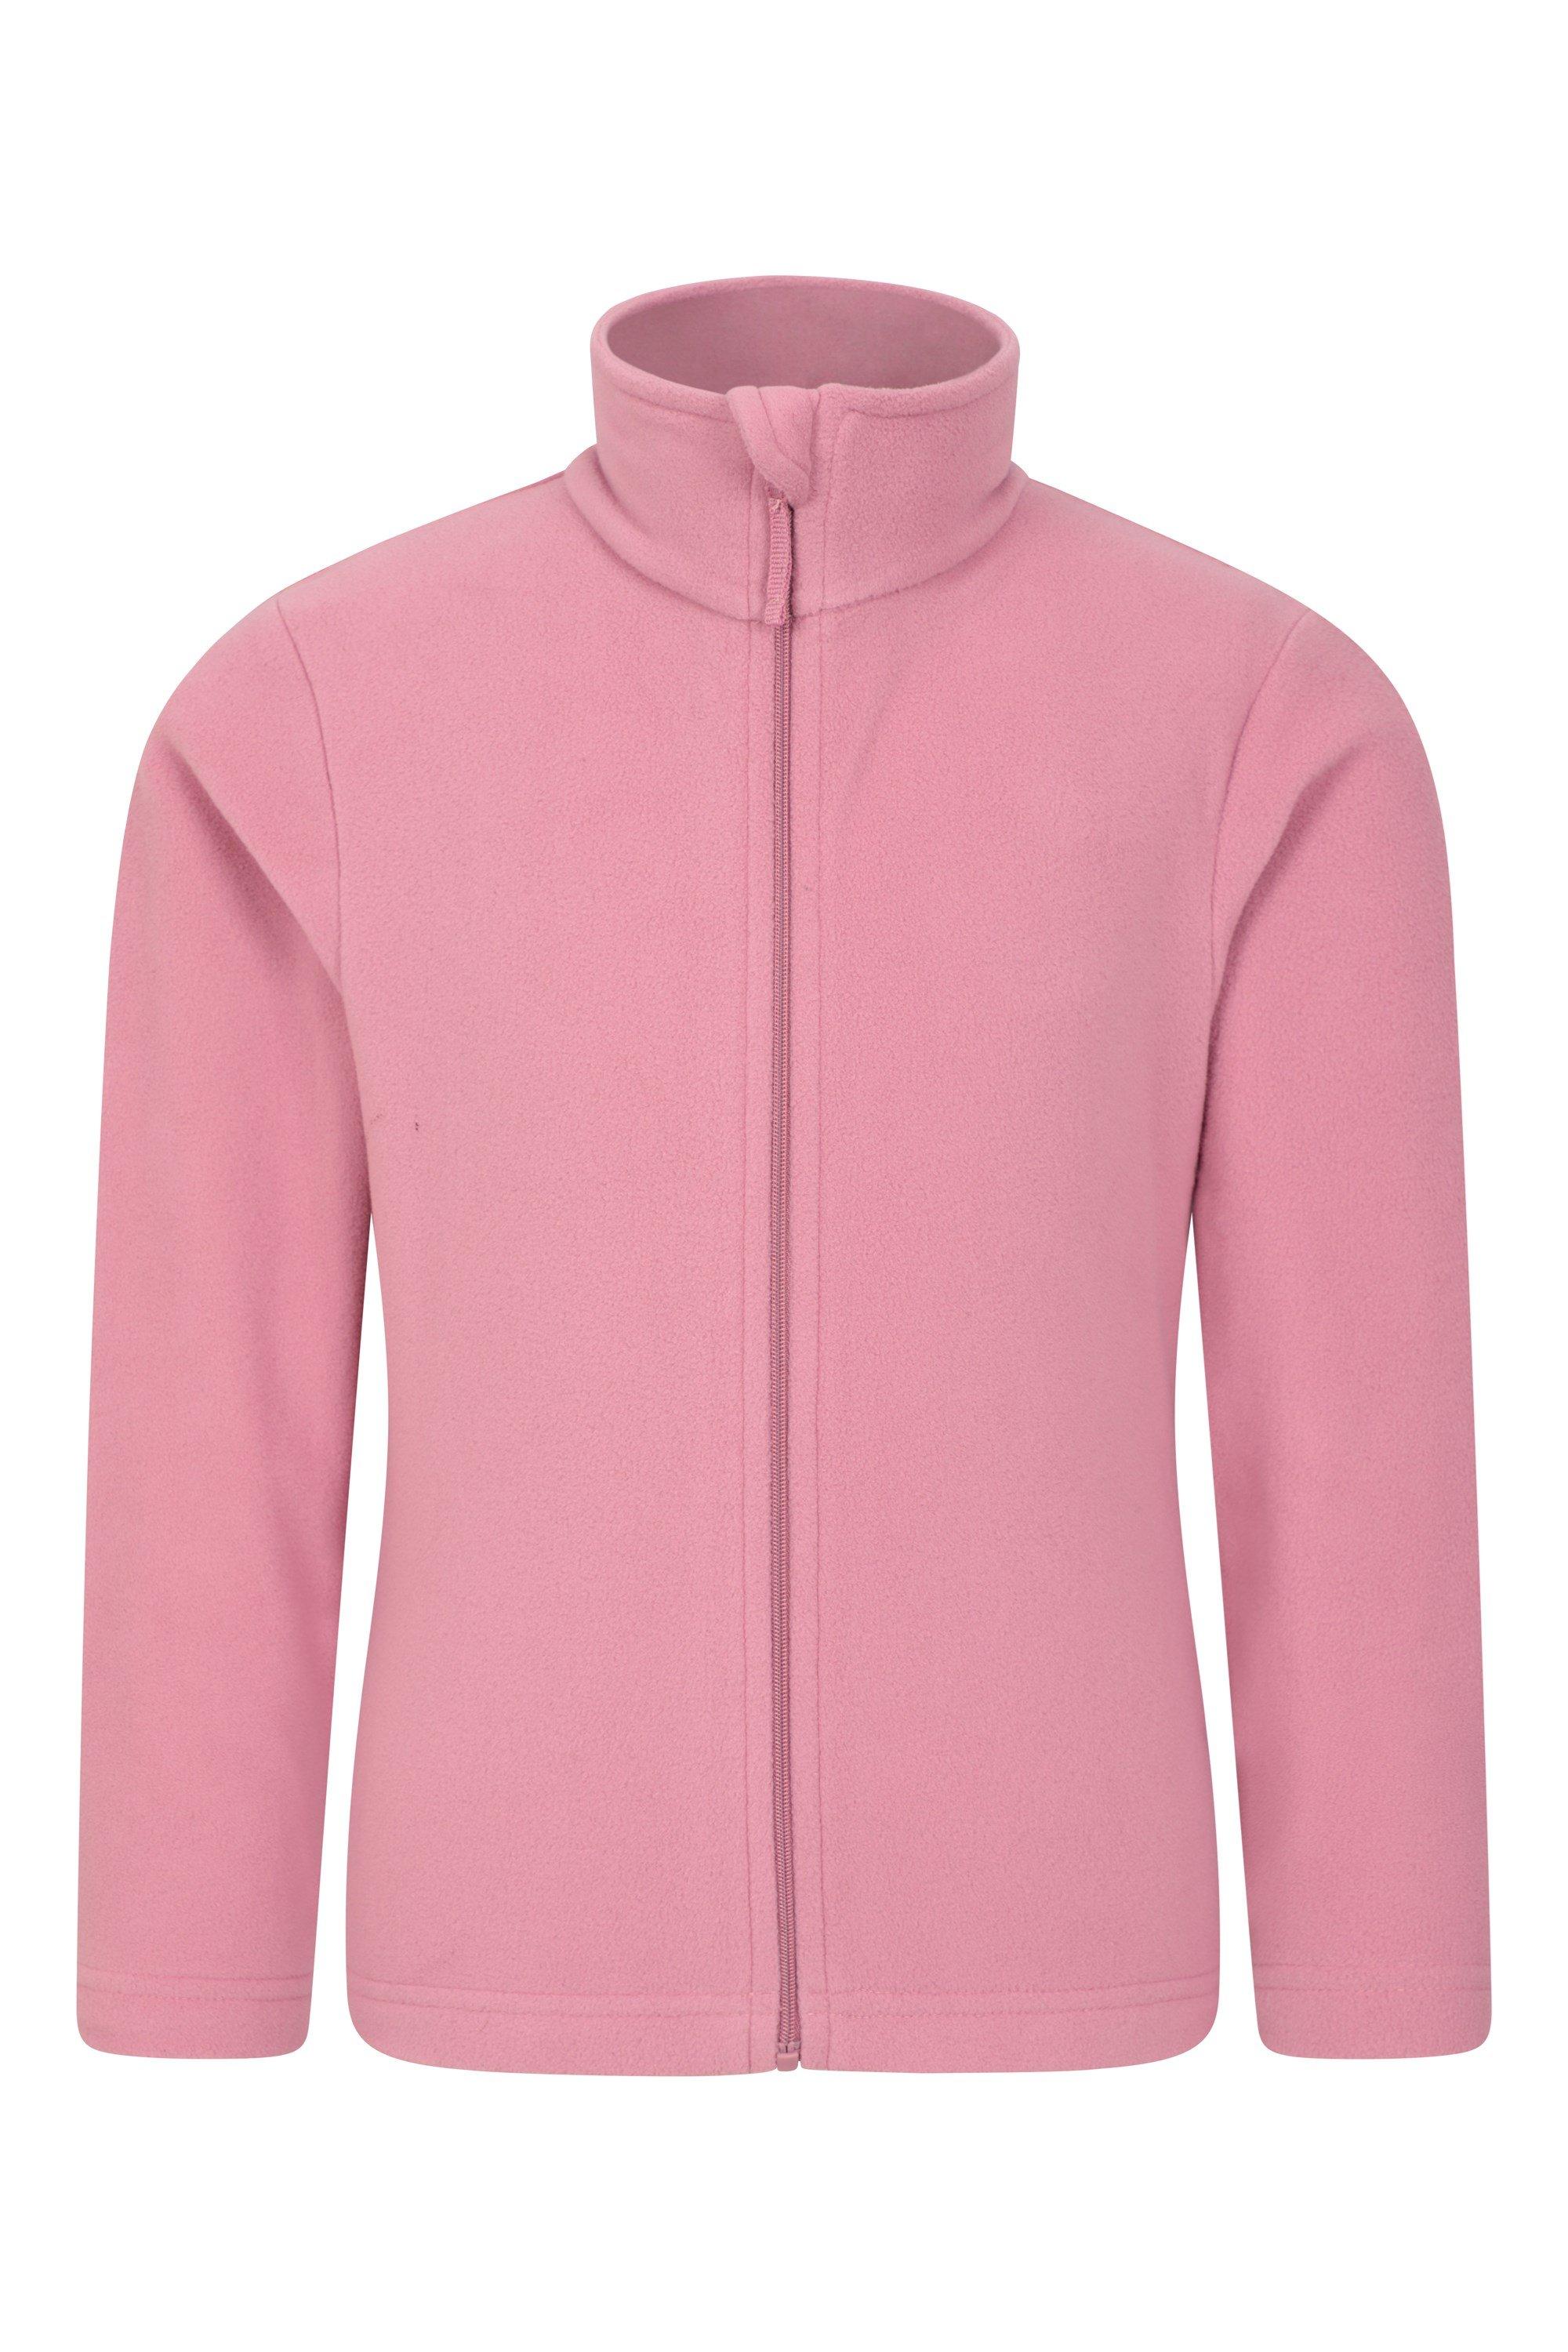 Флисовая куртка с полной молнией Camber 2, теплый джемпер с защитой от таблеток Mountain Warehouse, розовый флисовая куртка uniqlo kids на молнии розовый